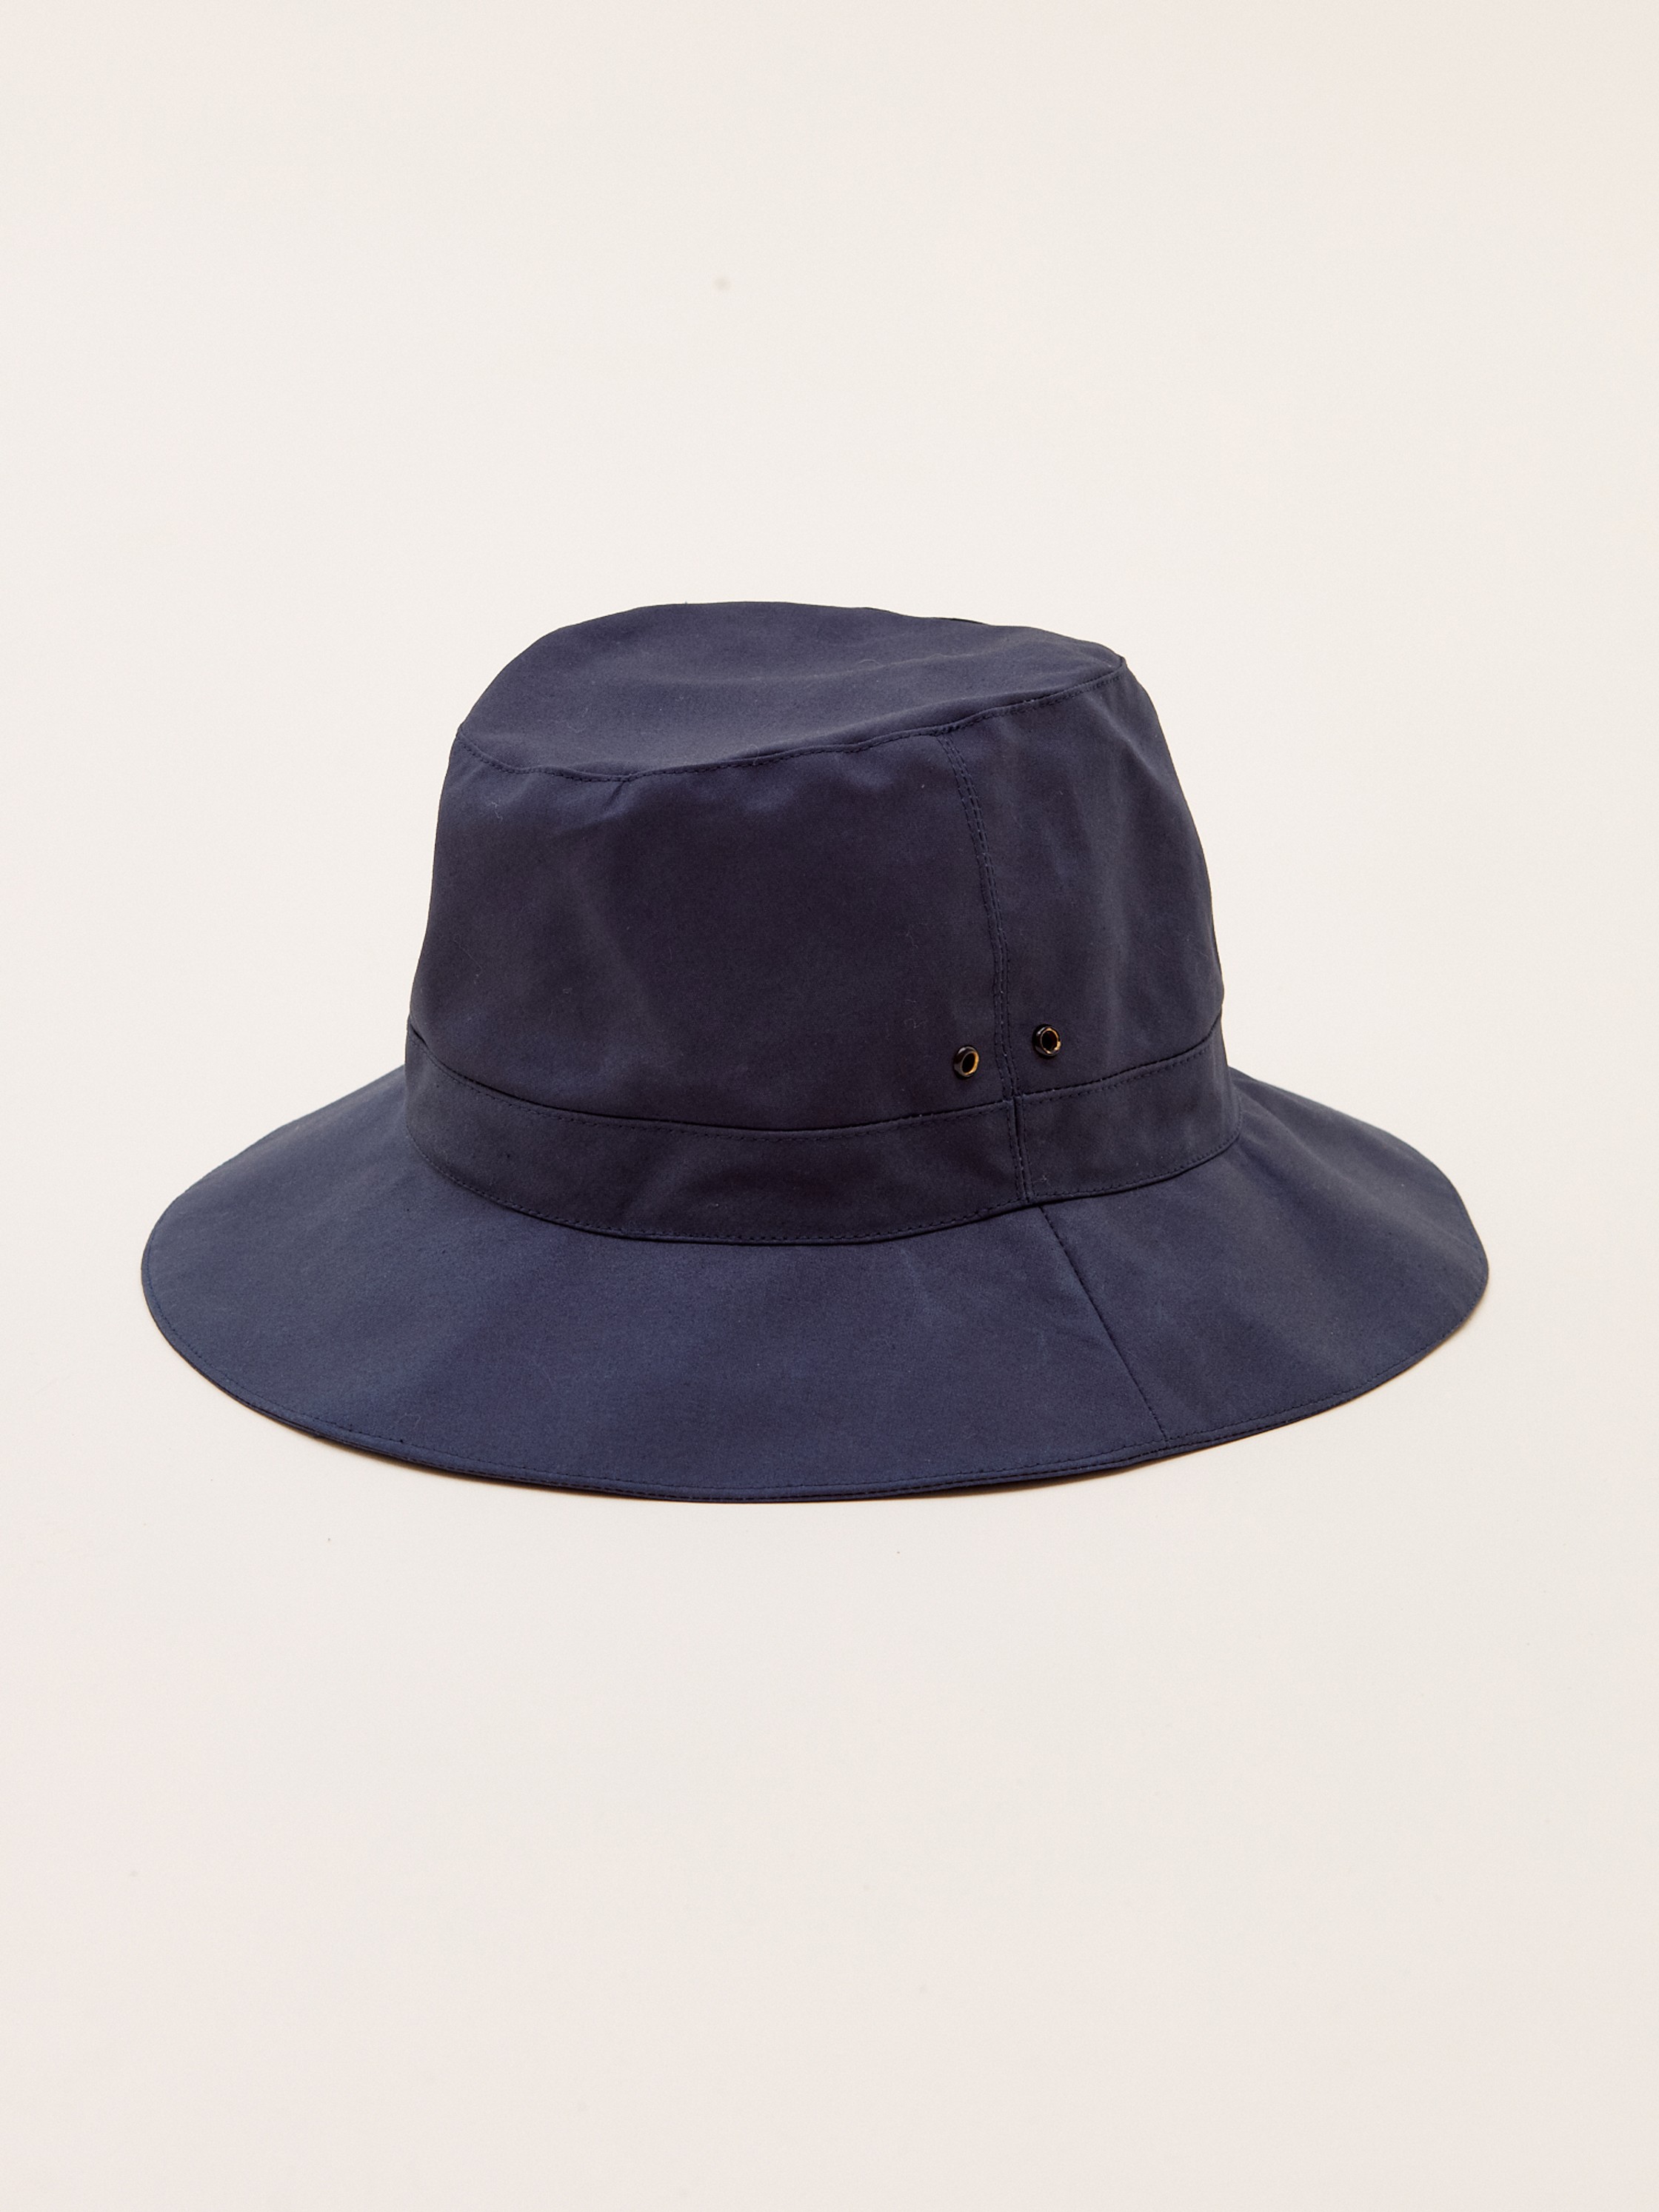 Waxed-cotton rain hat - Muehlbauer - Clothing - Shop | Monocle